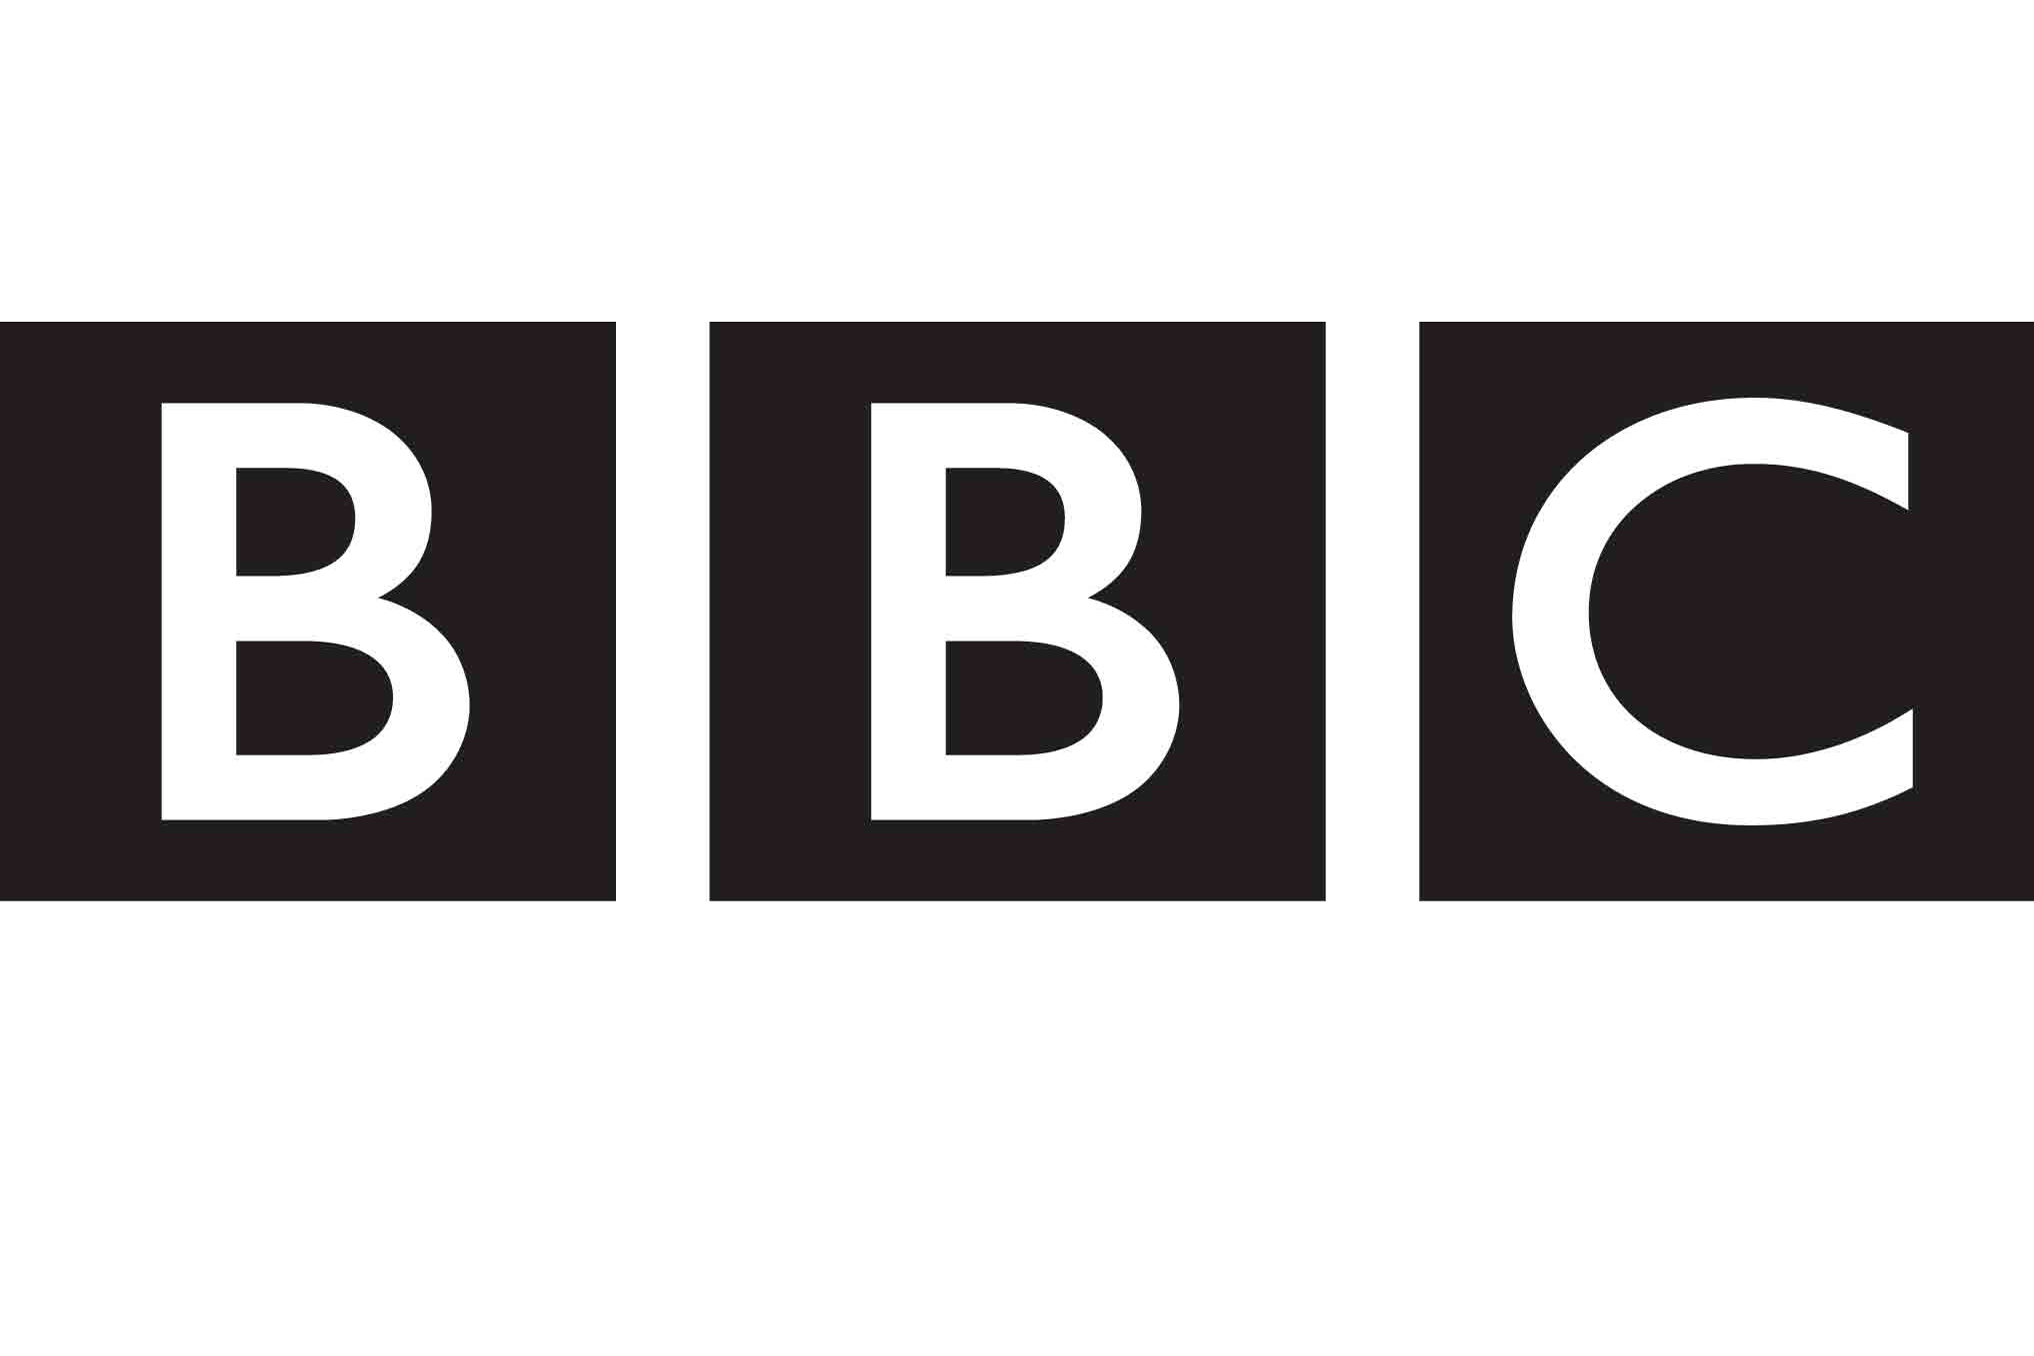 BBC отмечает прирост аудитории из России и Украины.